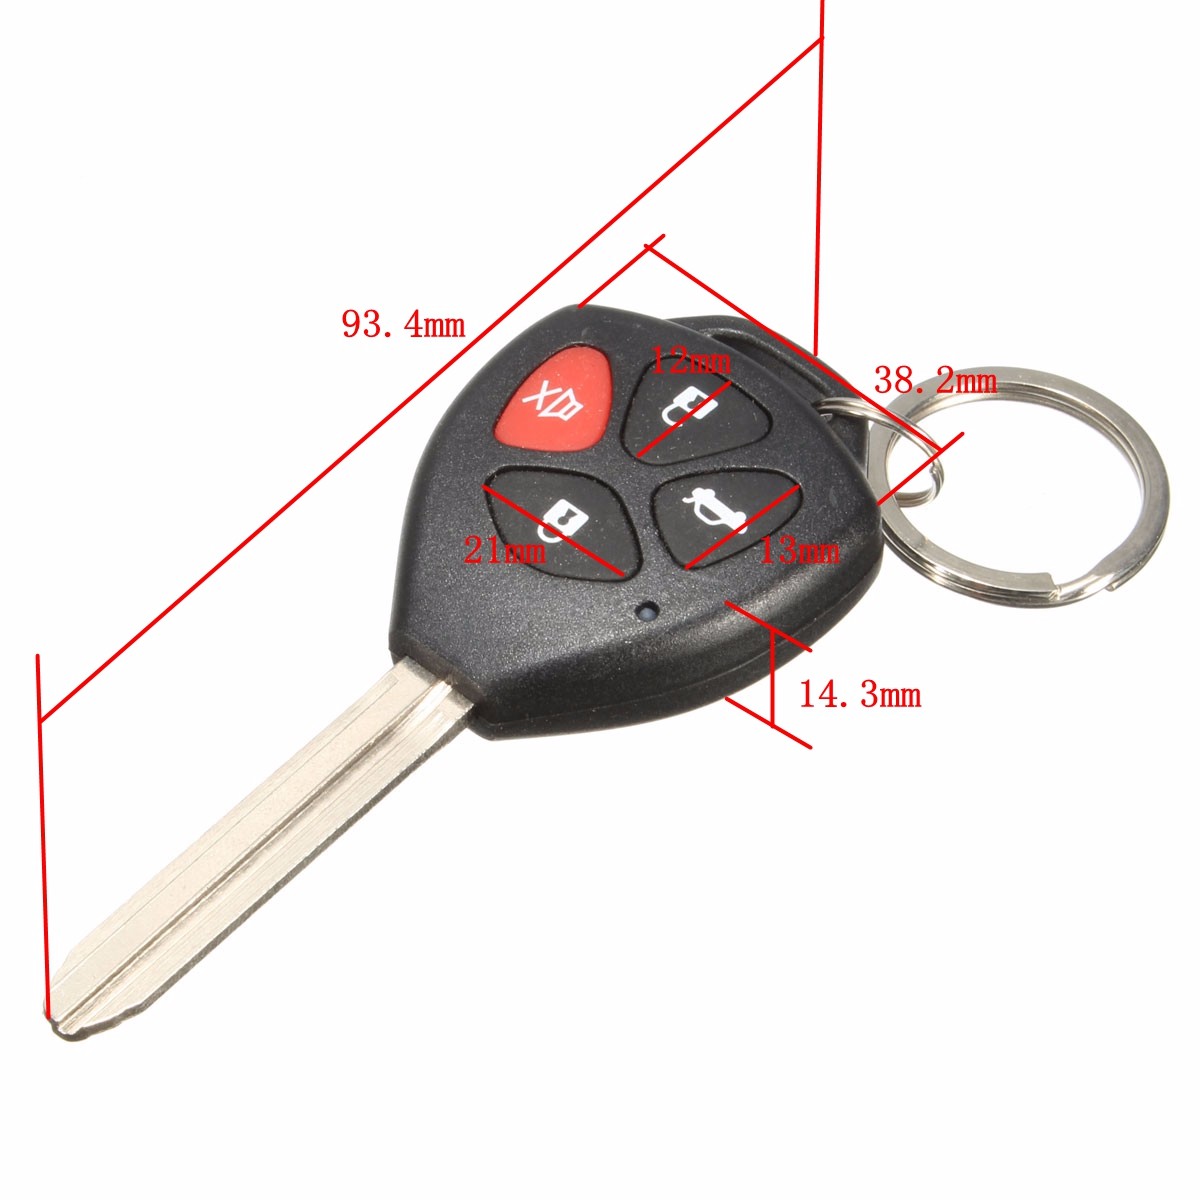 Car-Remote-Control-Burglar-Alarm-Keyless-Lock-Entry-System-For-Toyota-2-Remote-1125338